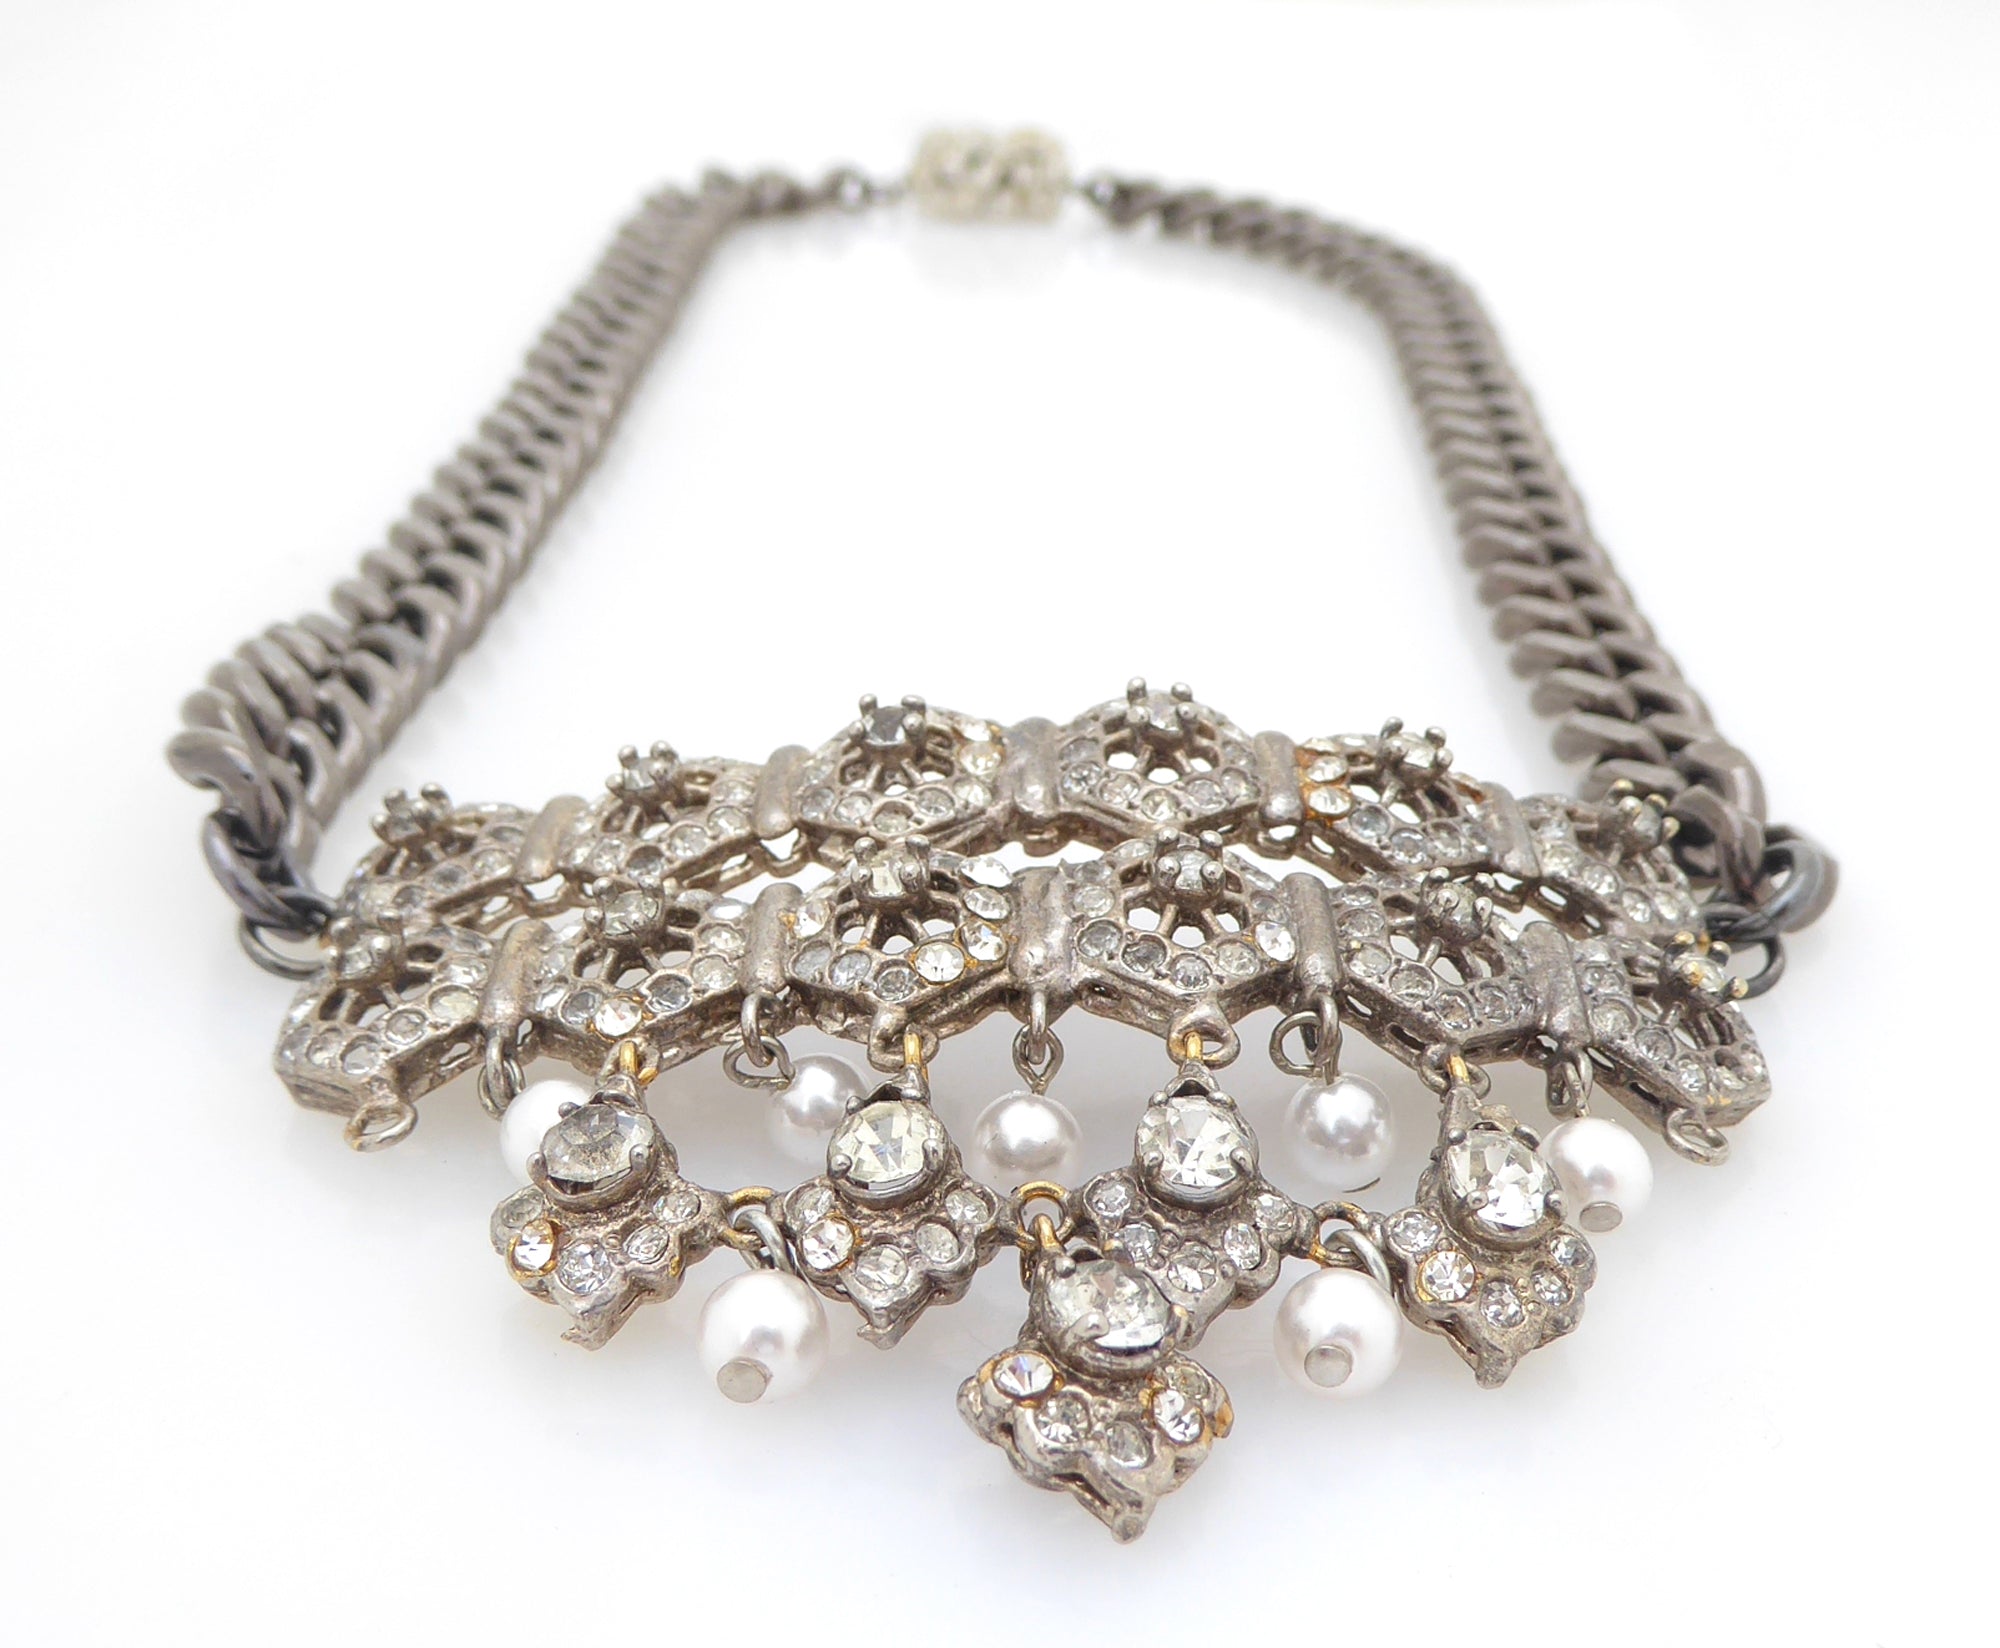 Tiretiera rhinestone pearl gunmetal necklace by Jenny Dayco 3